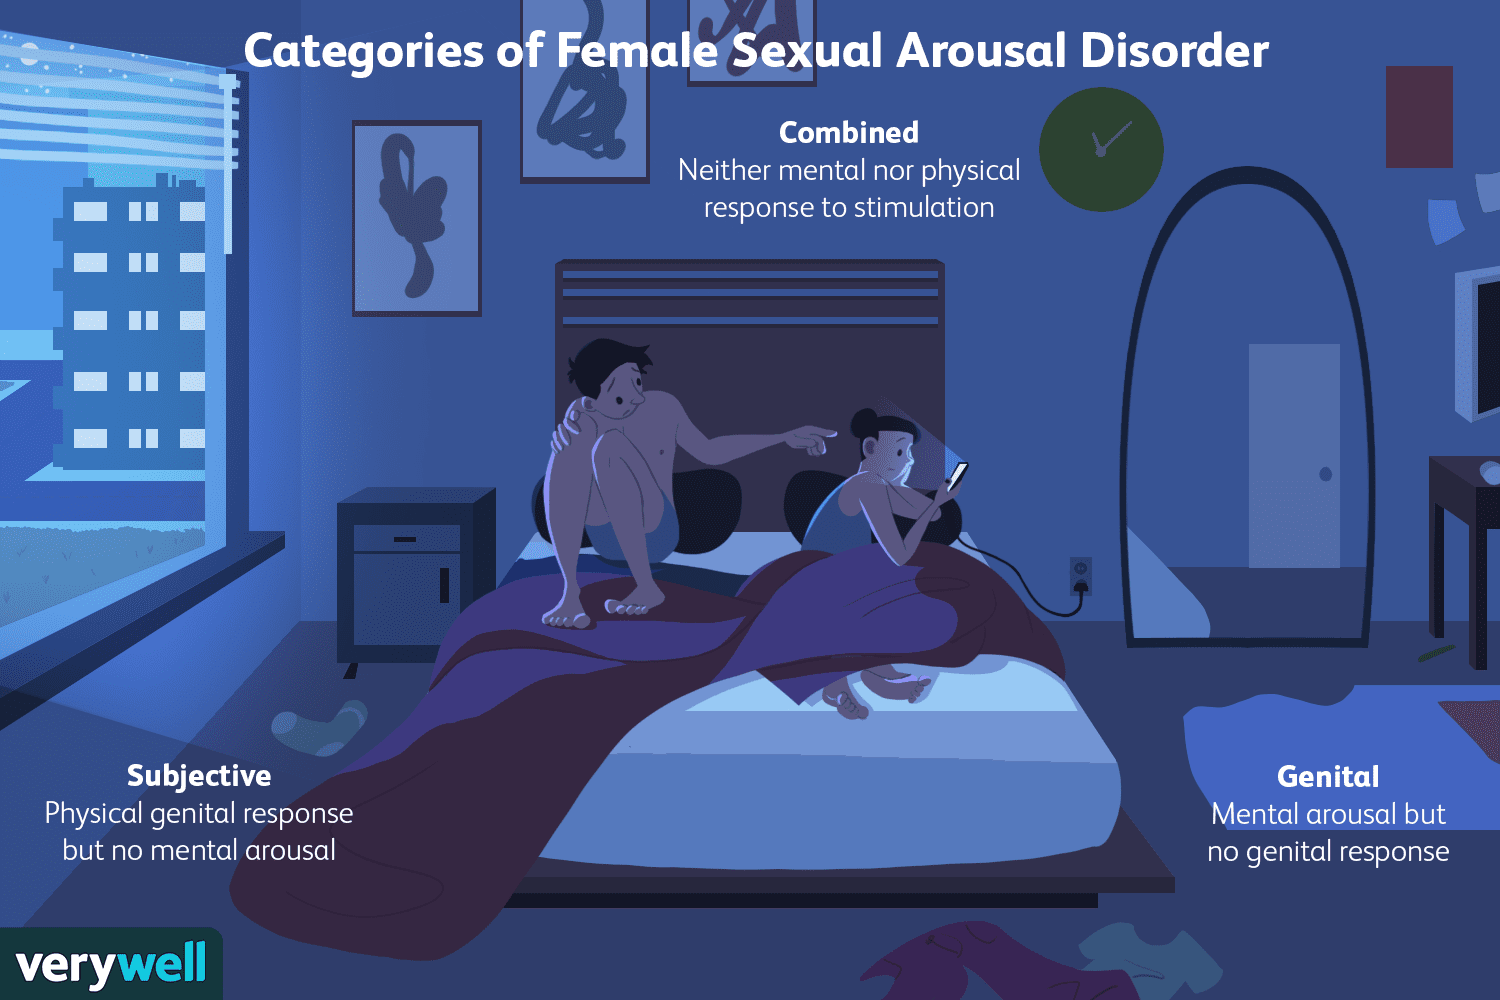 Female arousal disorder